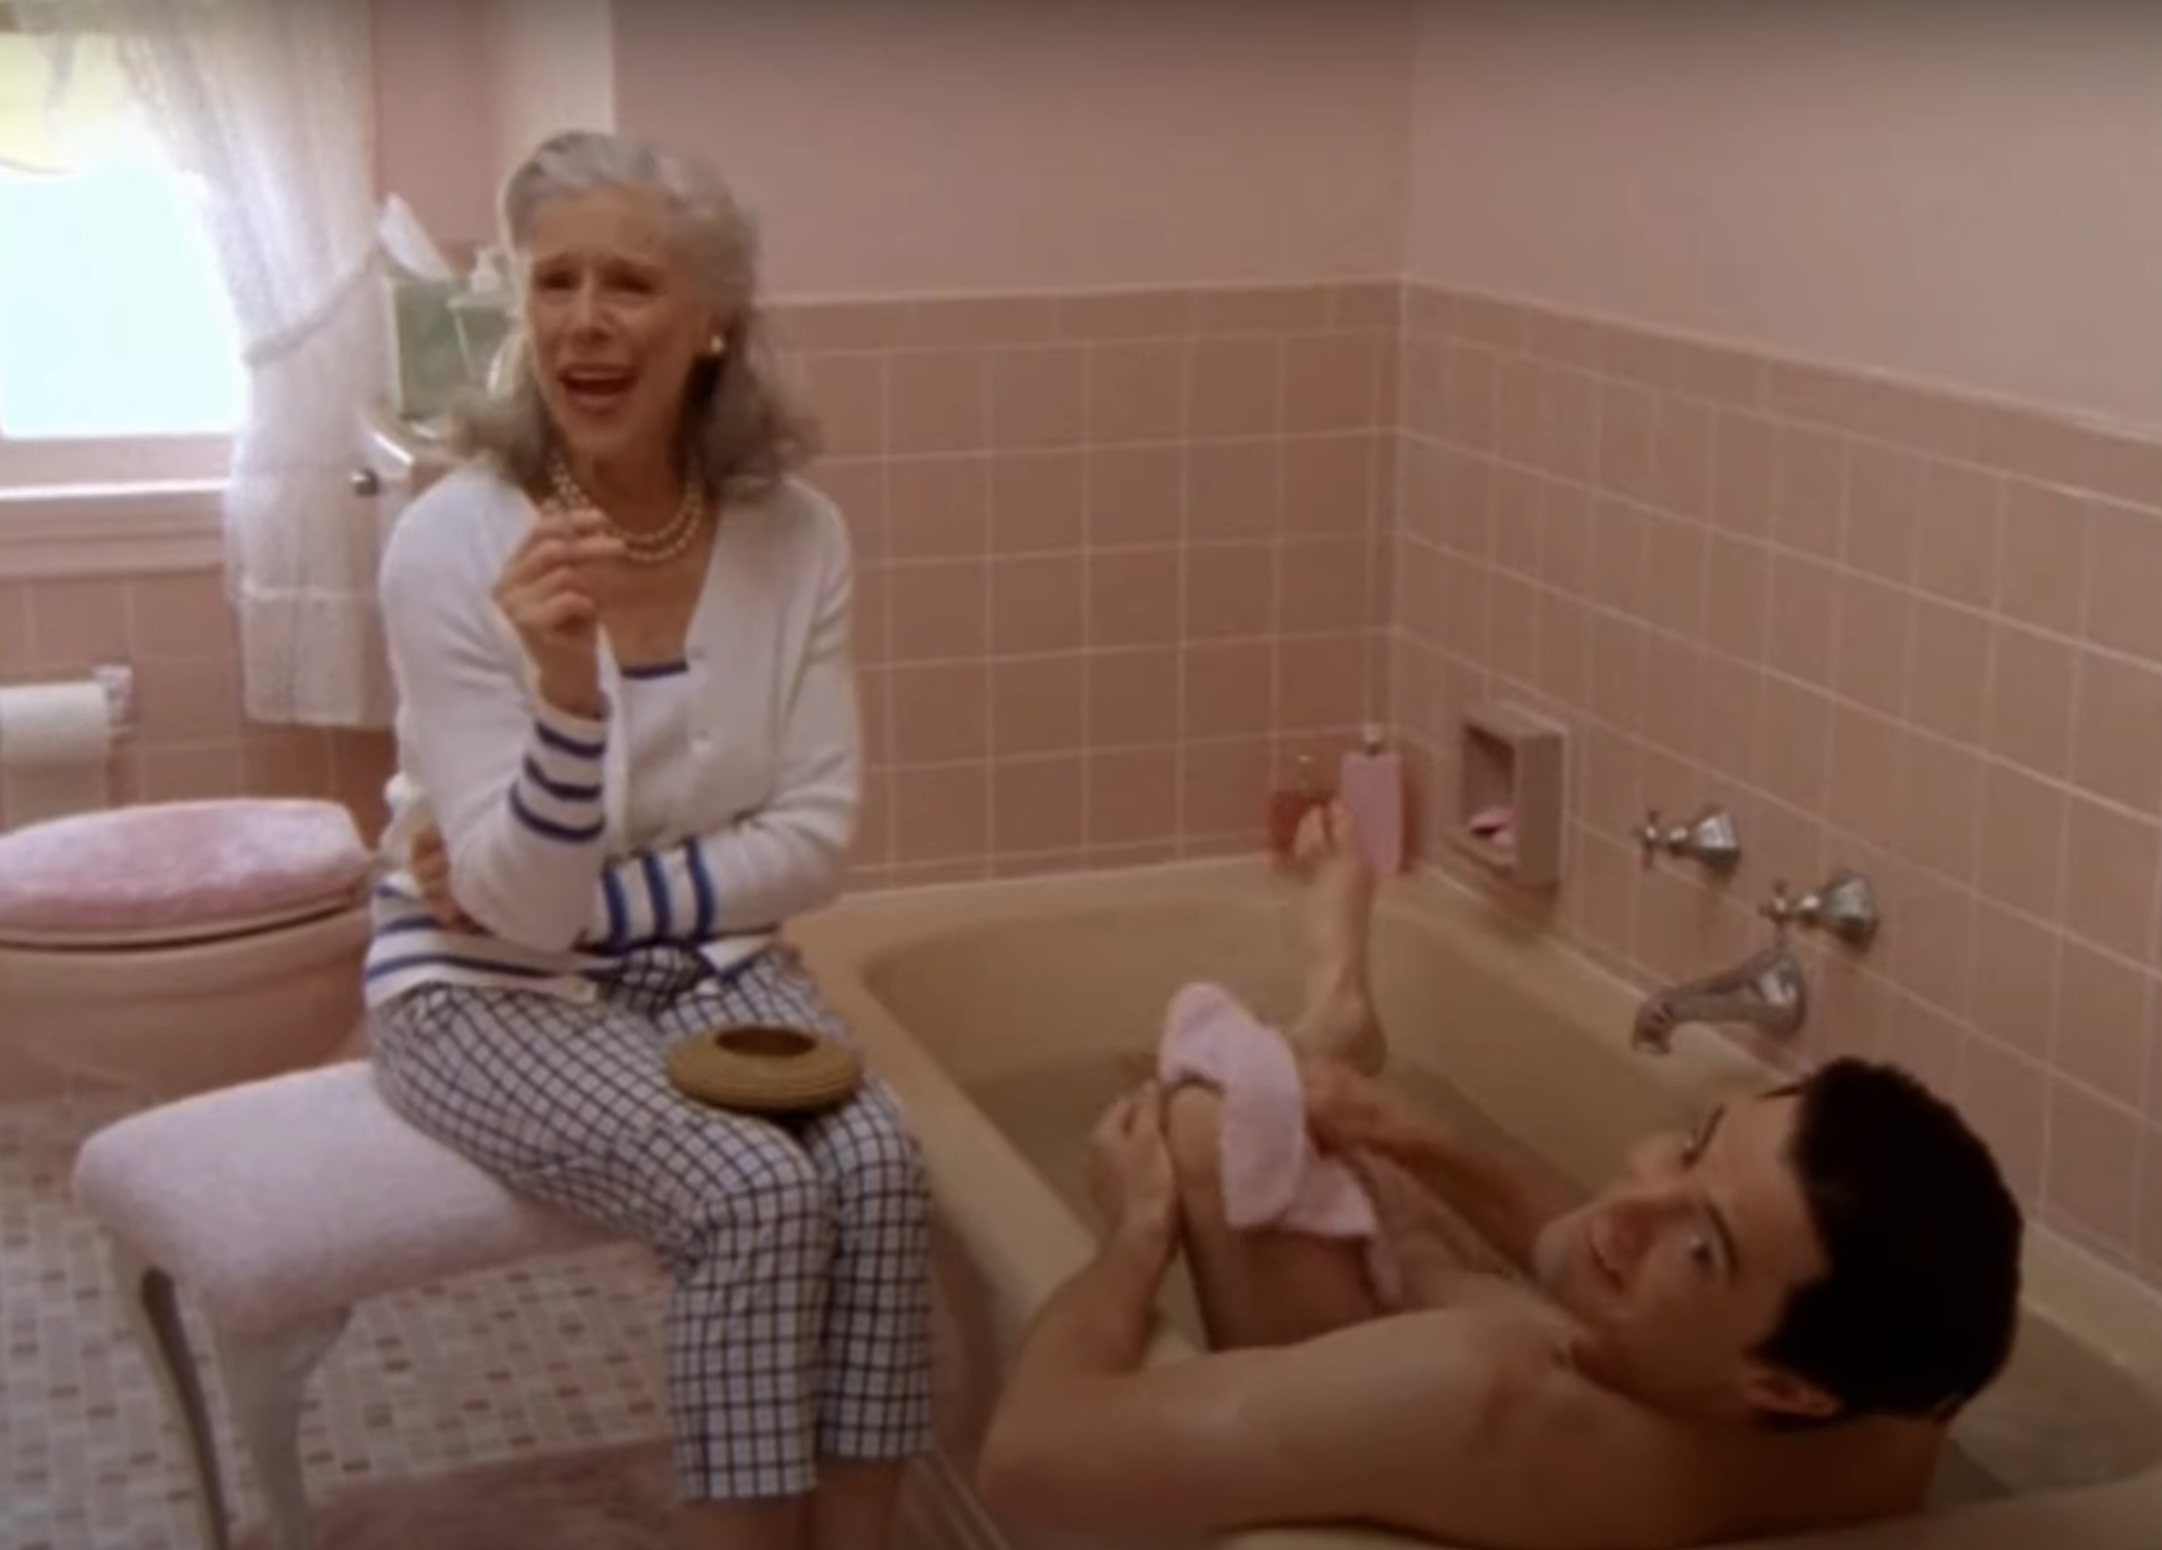 woman smoking in the bathroom while a man takes a bath